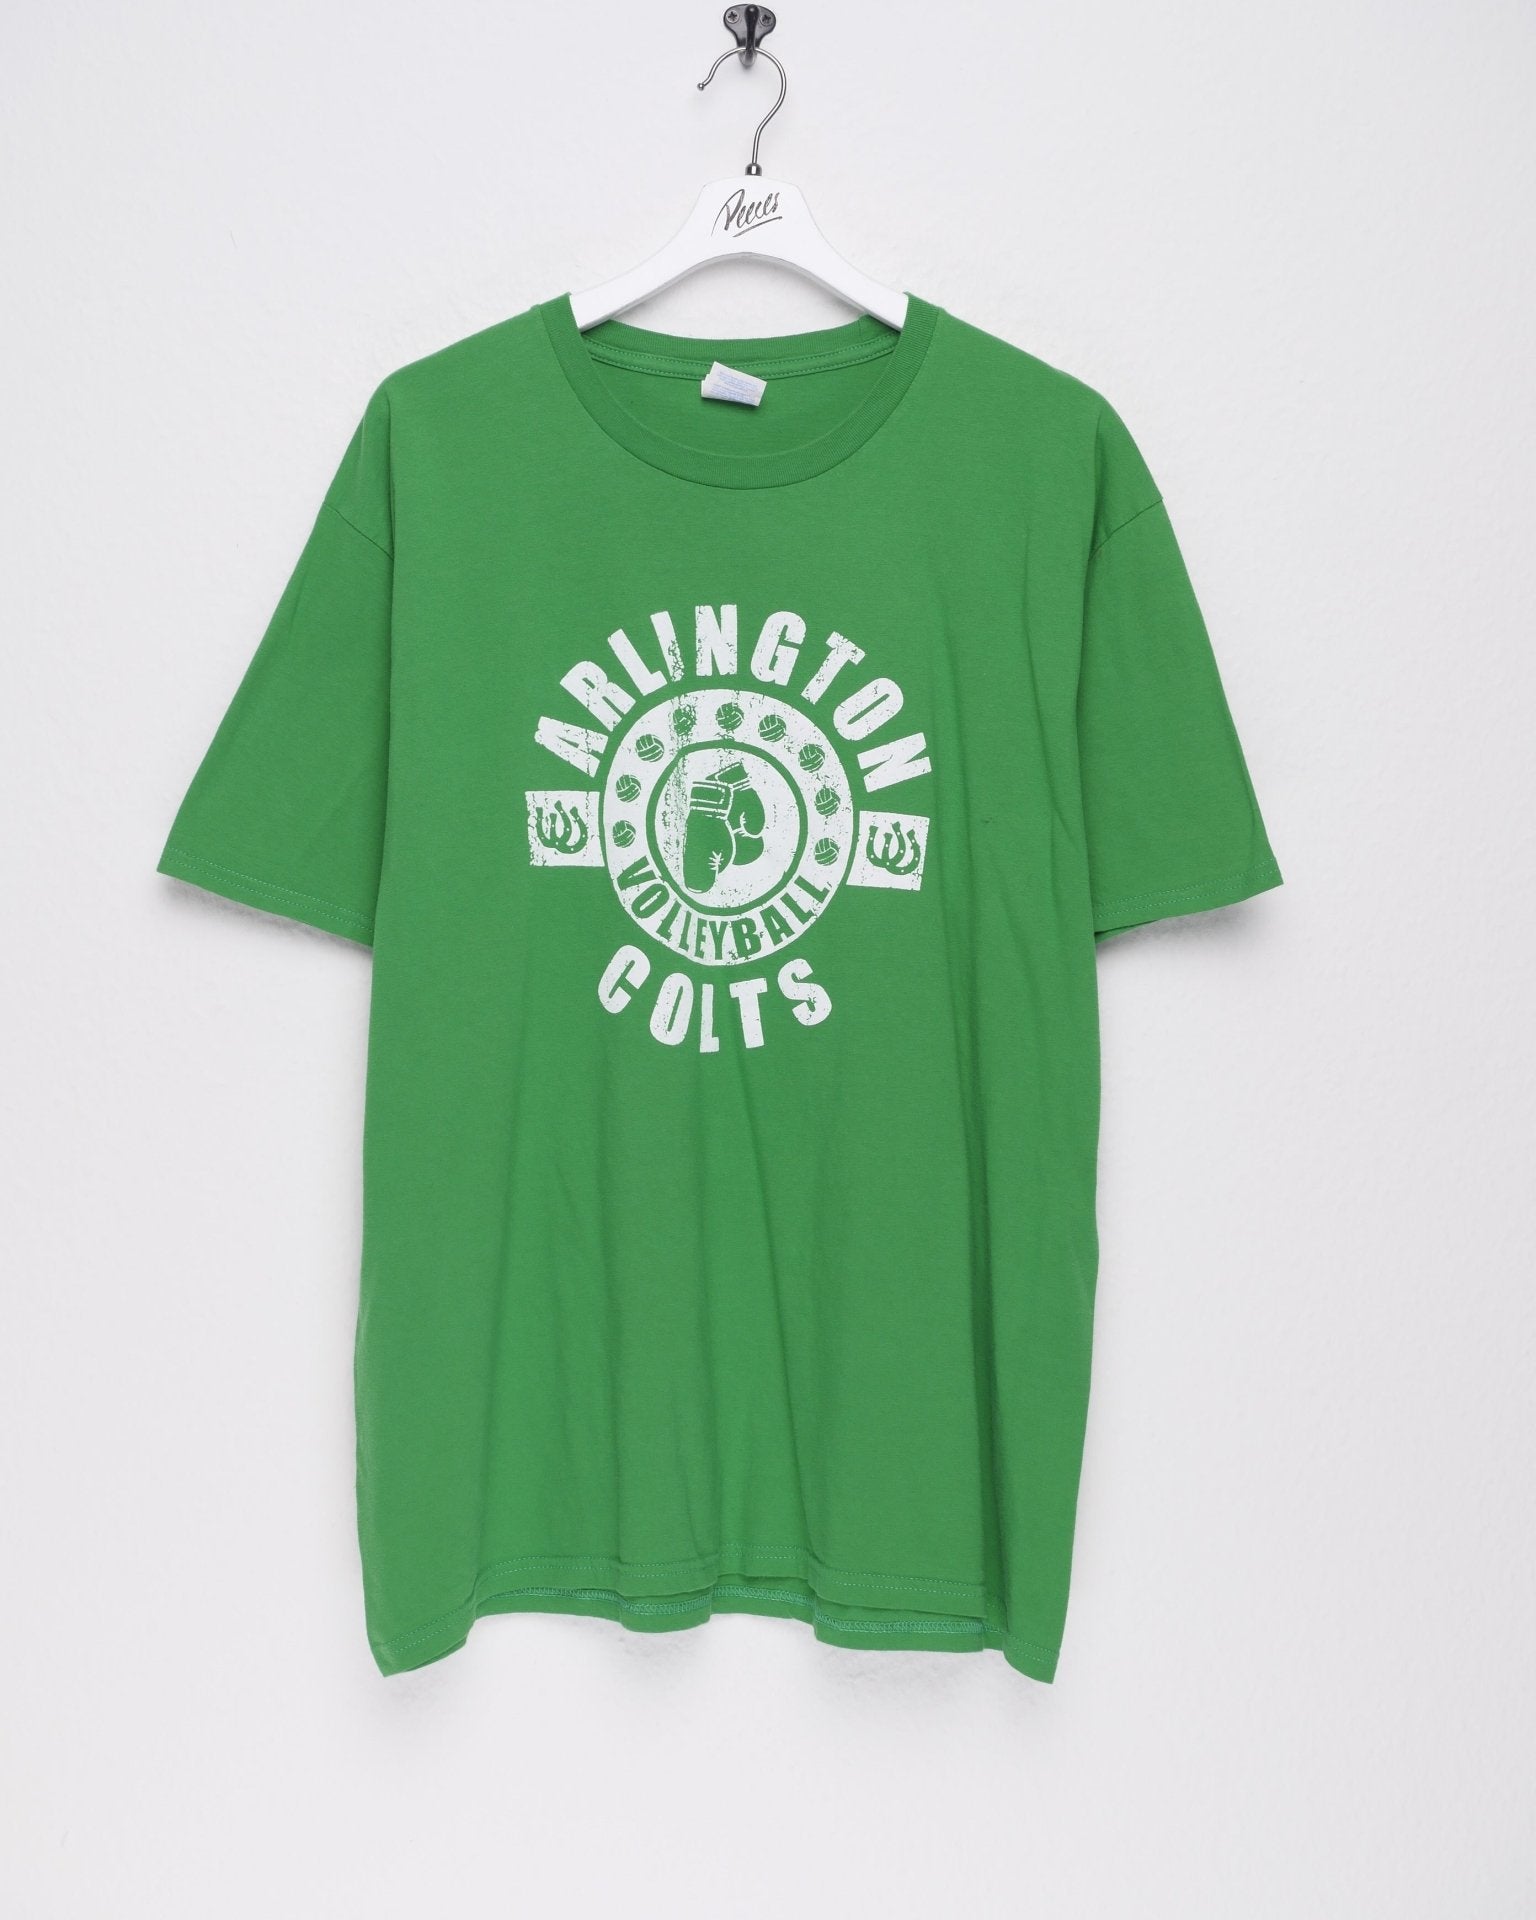 arlington colts volleyball printed Logo Shirt - Peeces